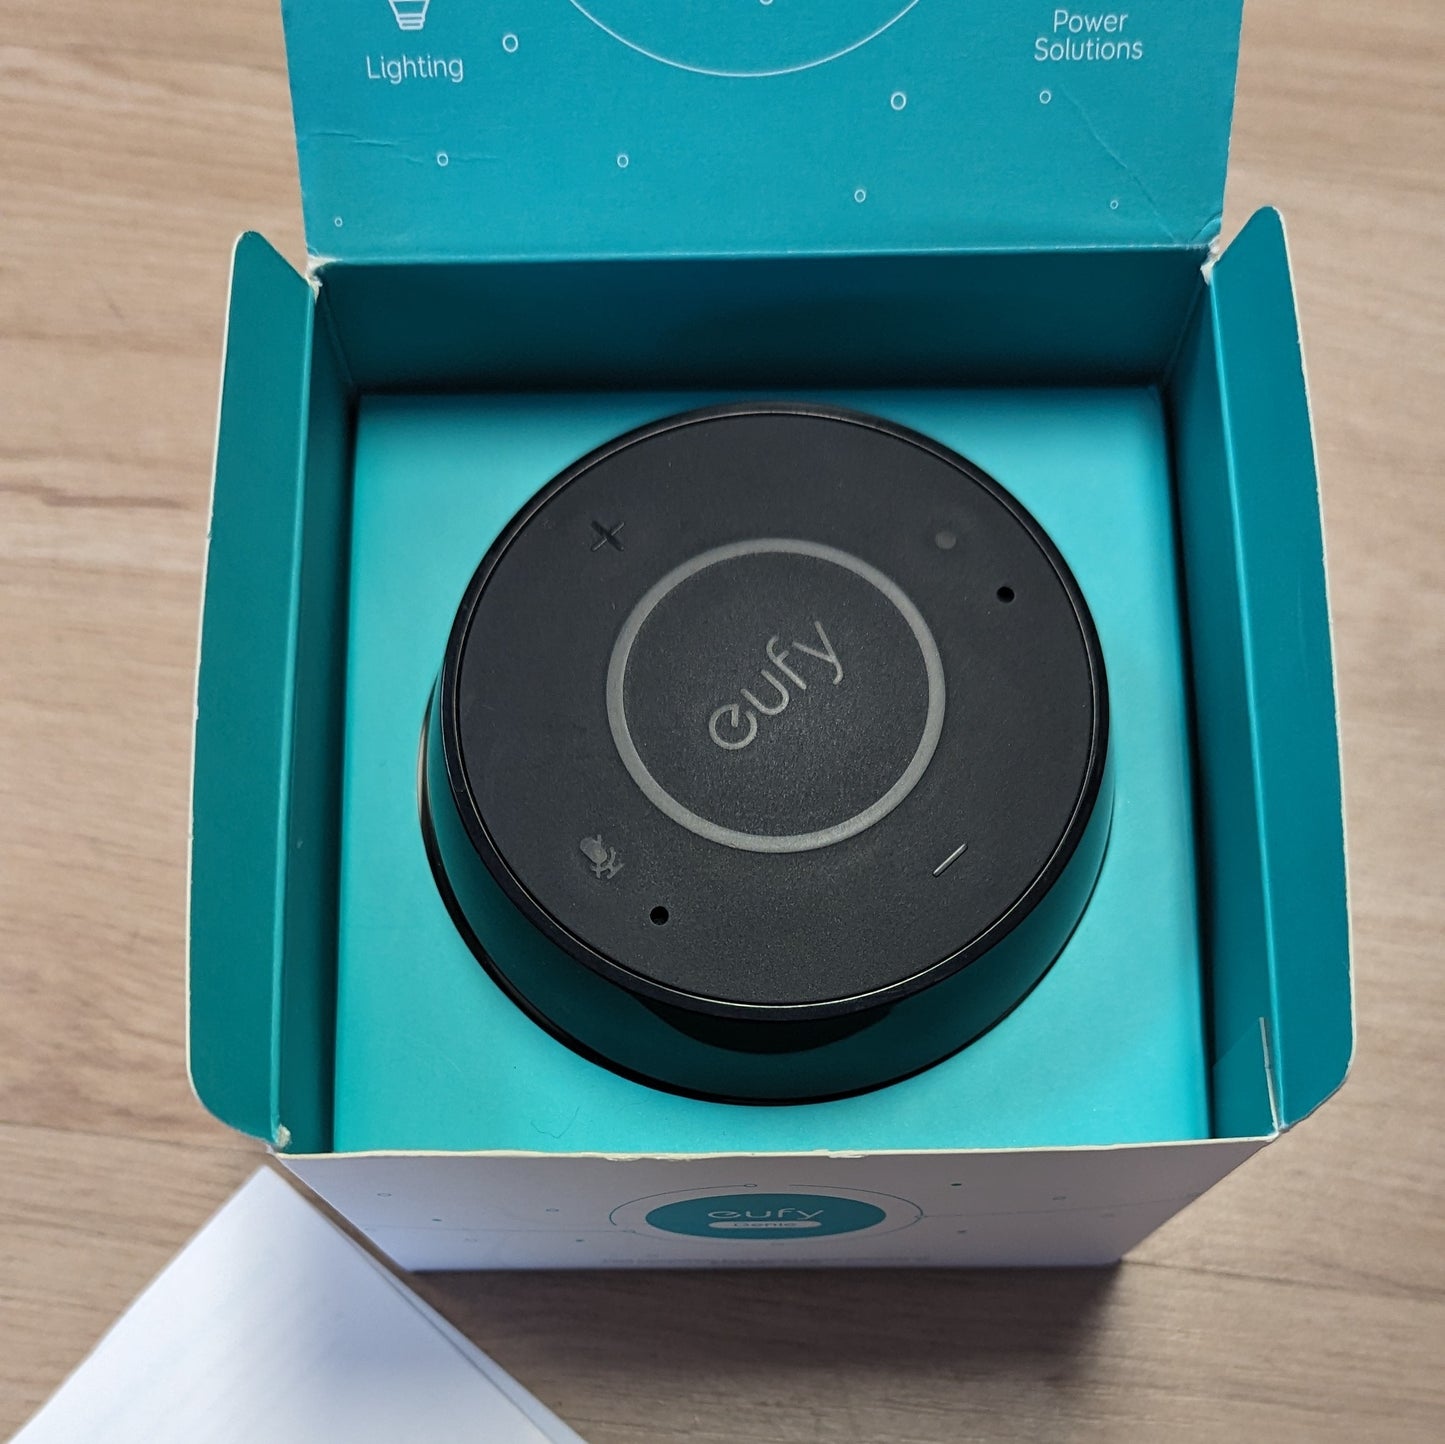 Eufy Genie Speaker Amazon Alexa T1240111